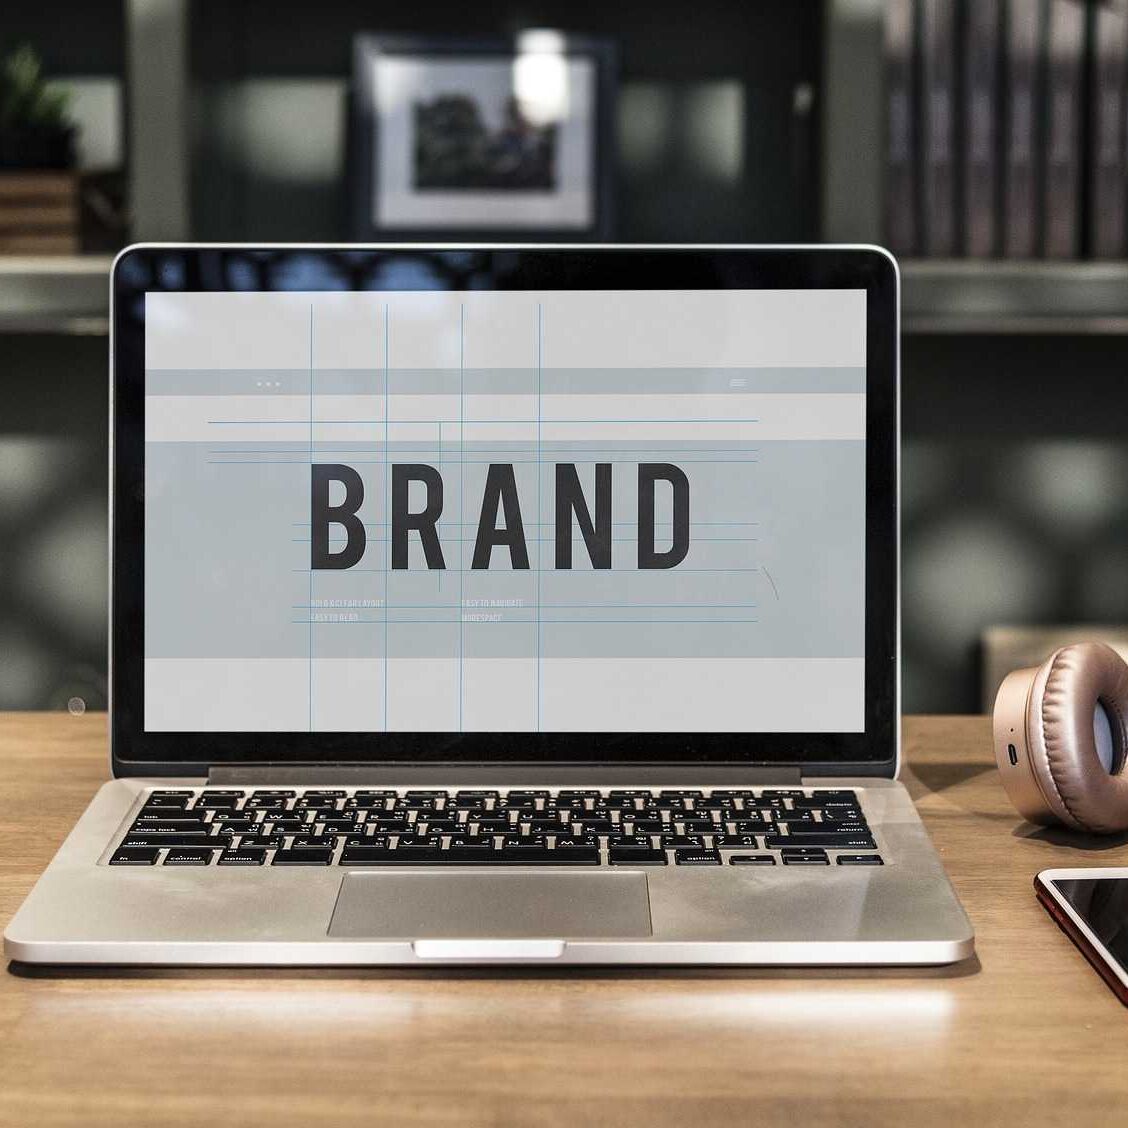 Il branding è il processo effettuato dalle imprese per differenziare la propria offerta da altre analoghe, utilizzando nomi o simboli distintivi